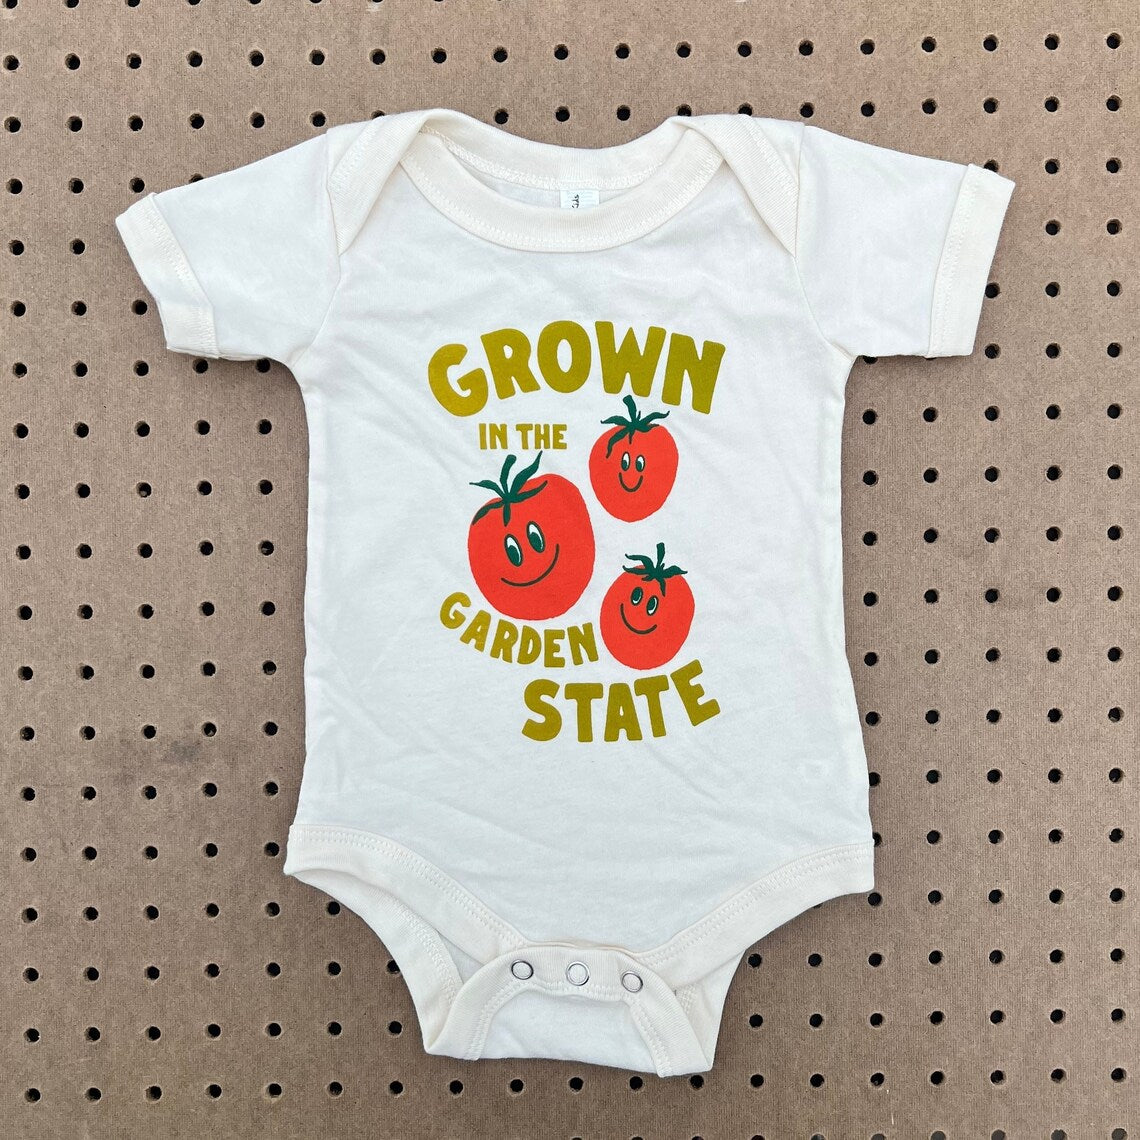 Grown in the Garden State Baby Onesie